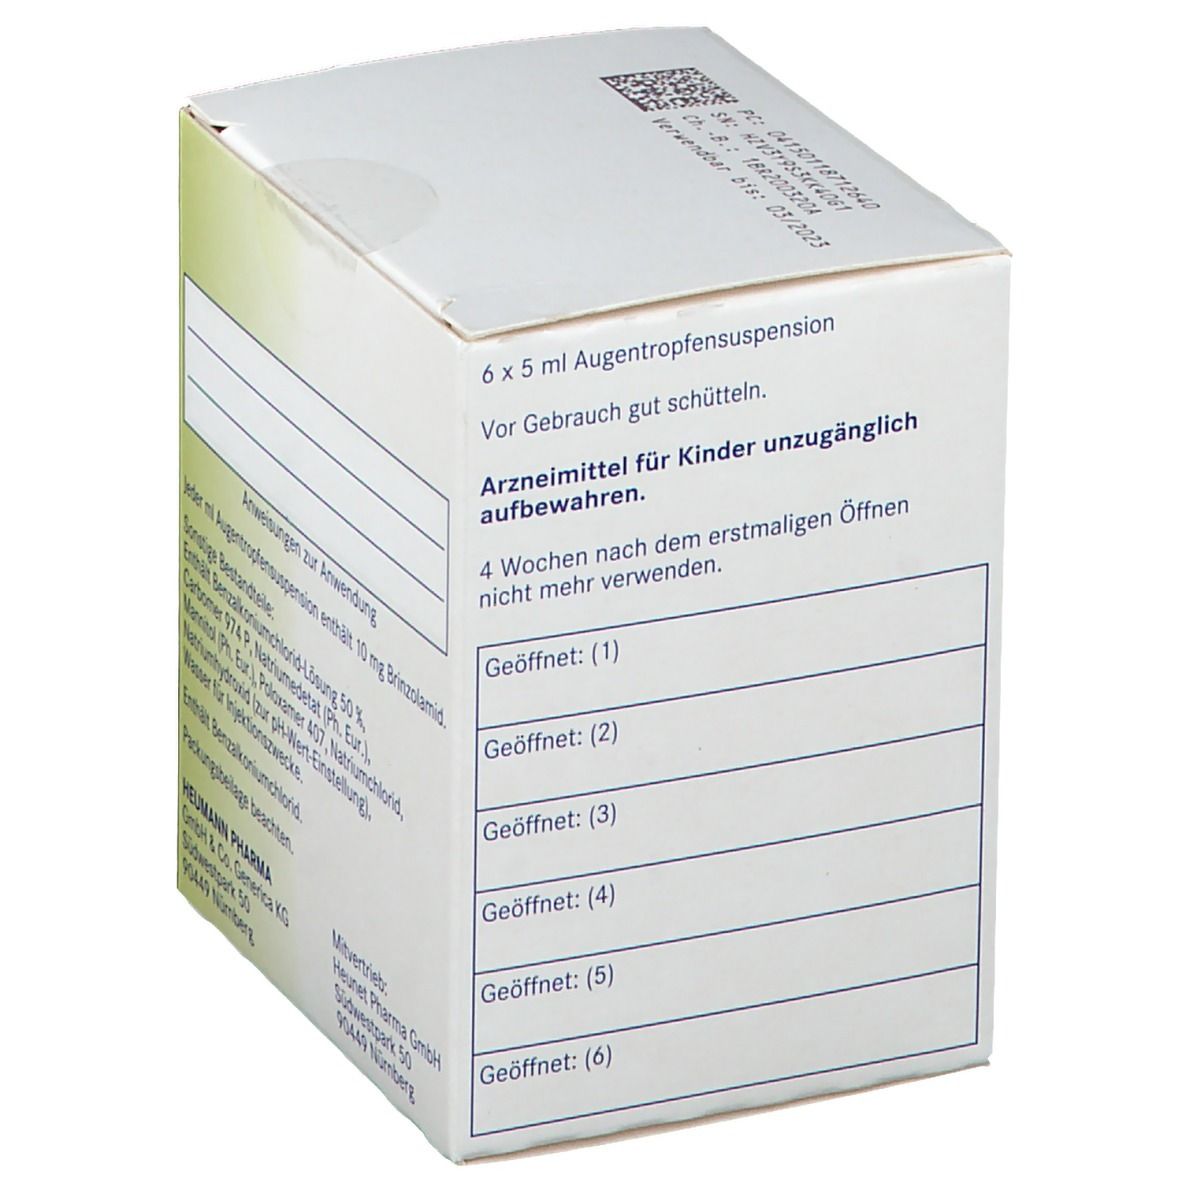 Brinzolamid Heumann 10 mg/ml